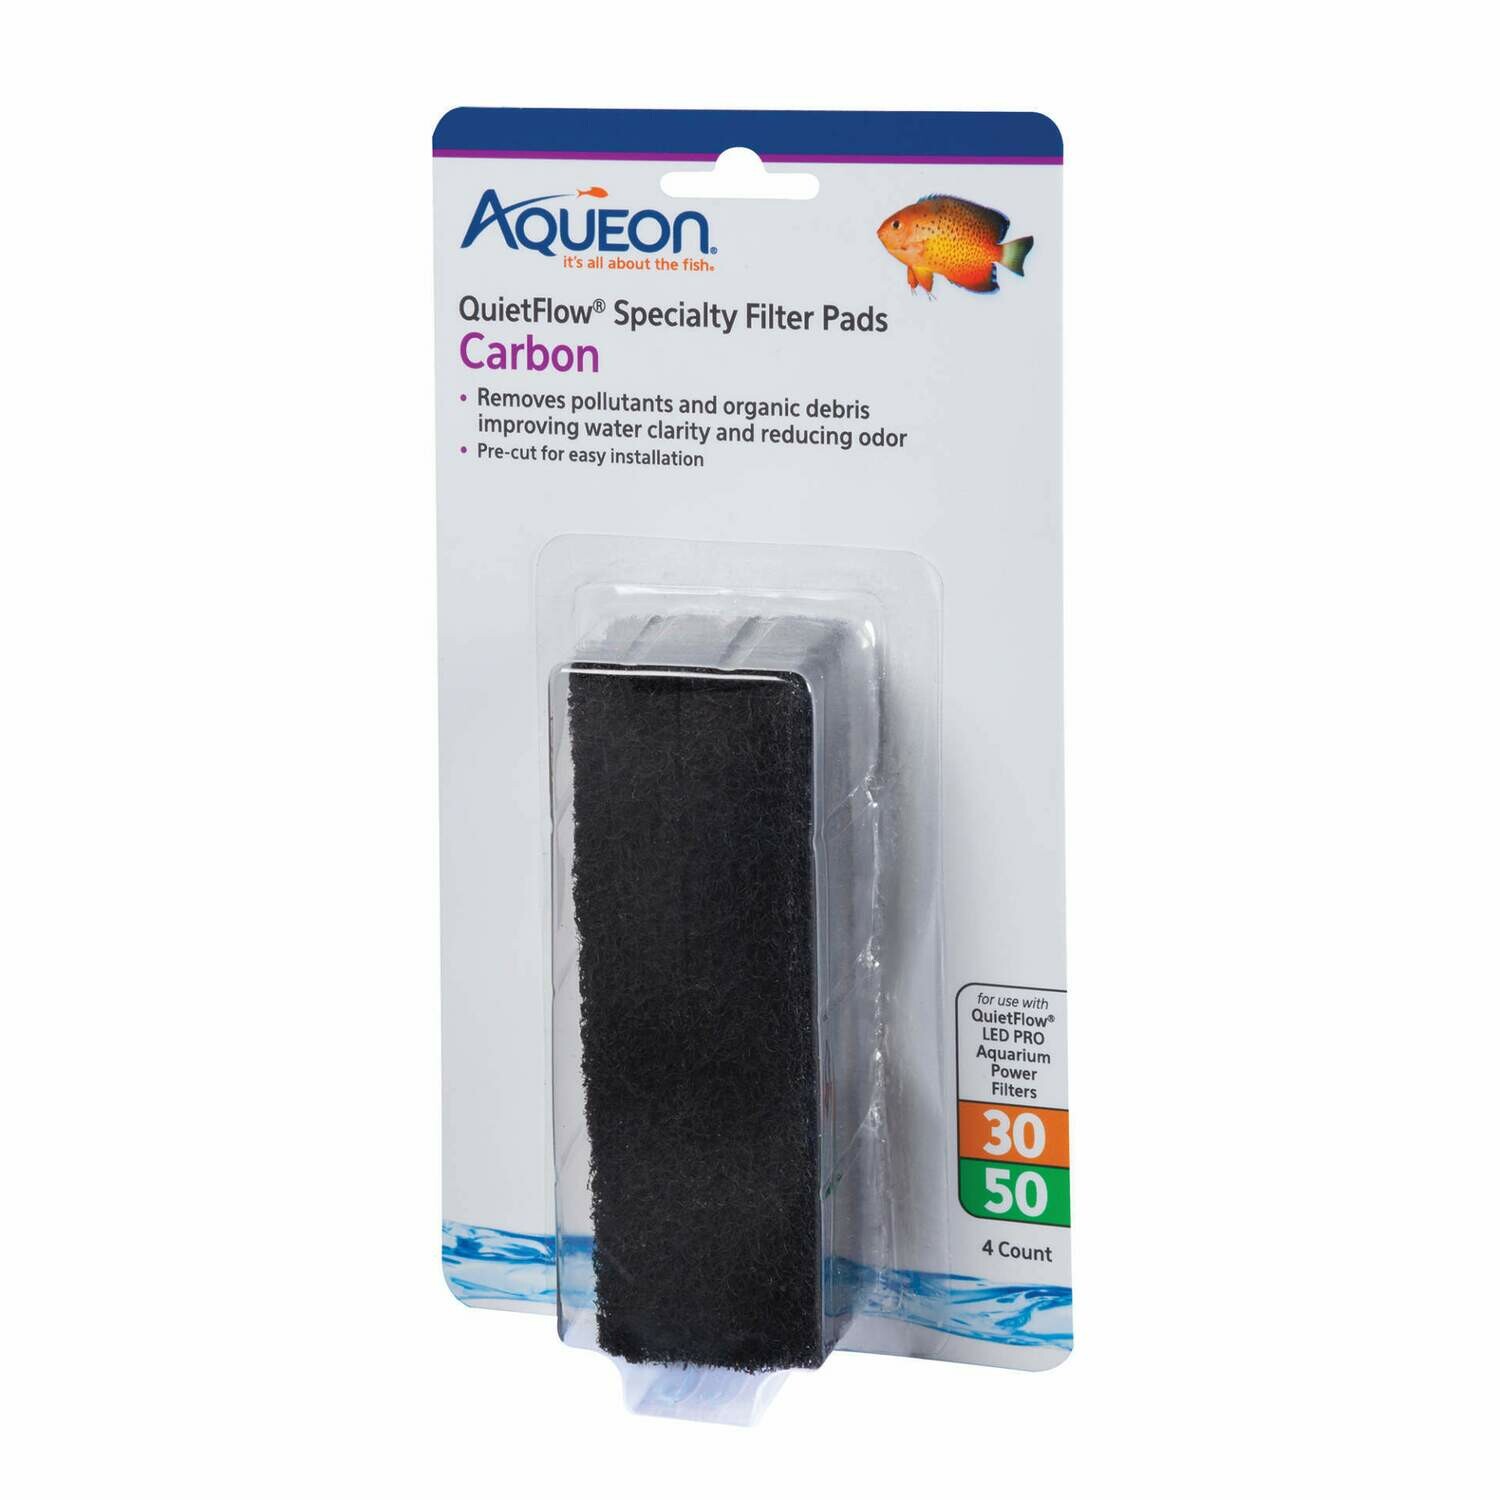 Aqueon QuietFlow Specialty Filter Pads Carbon 30/50